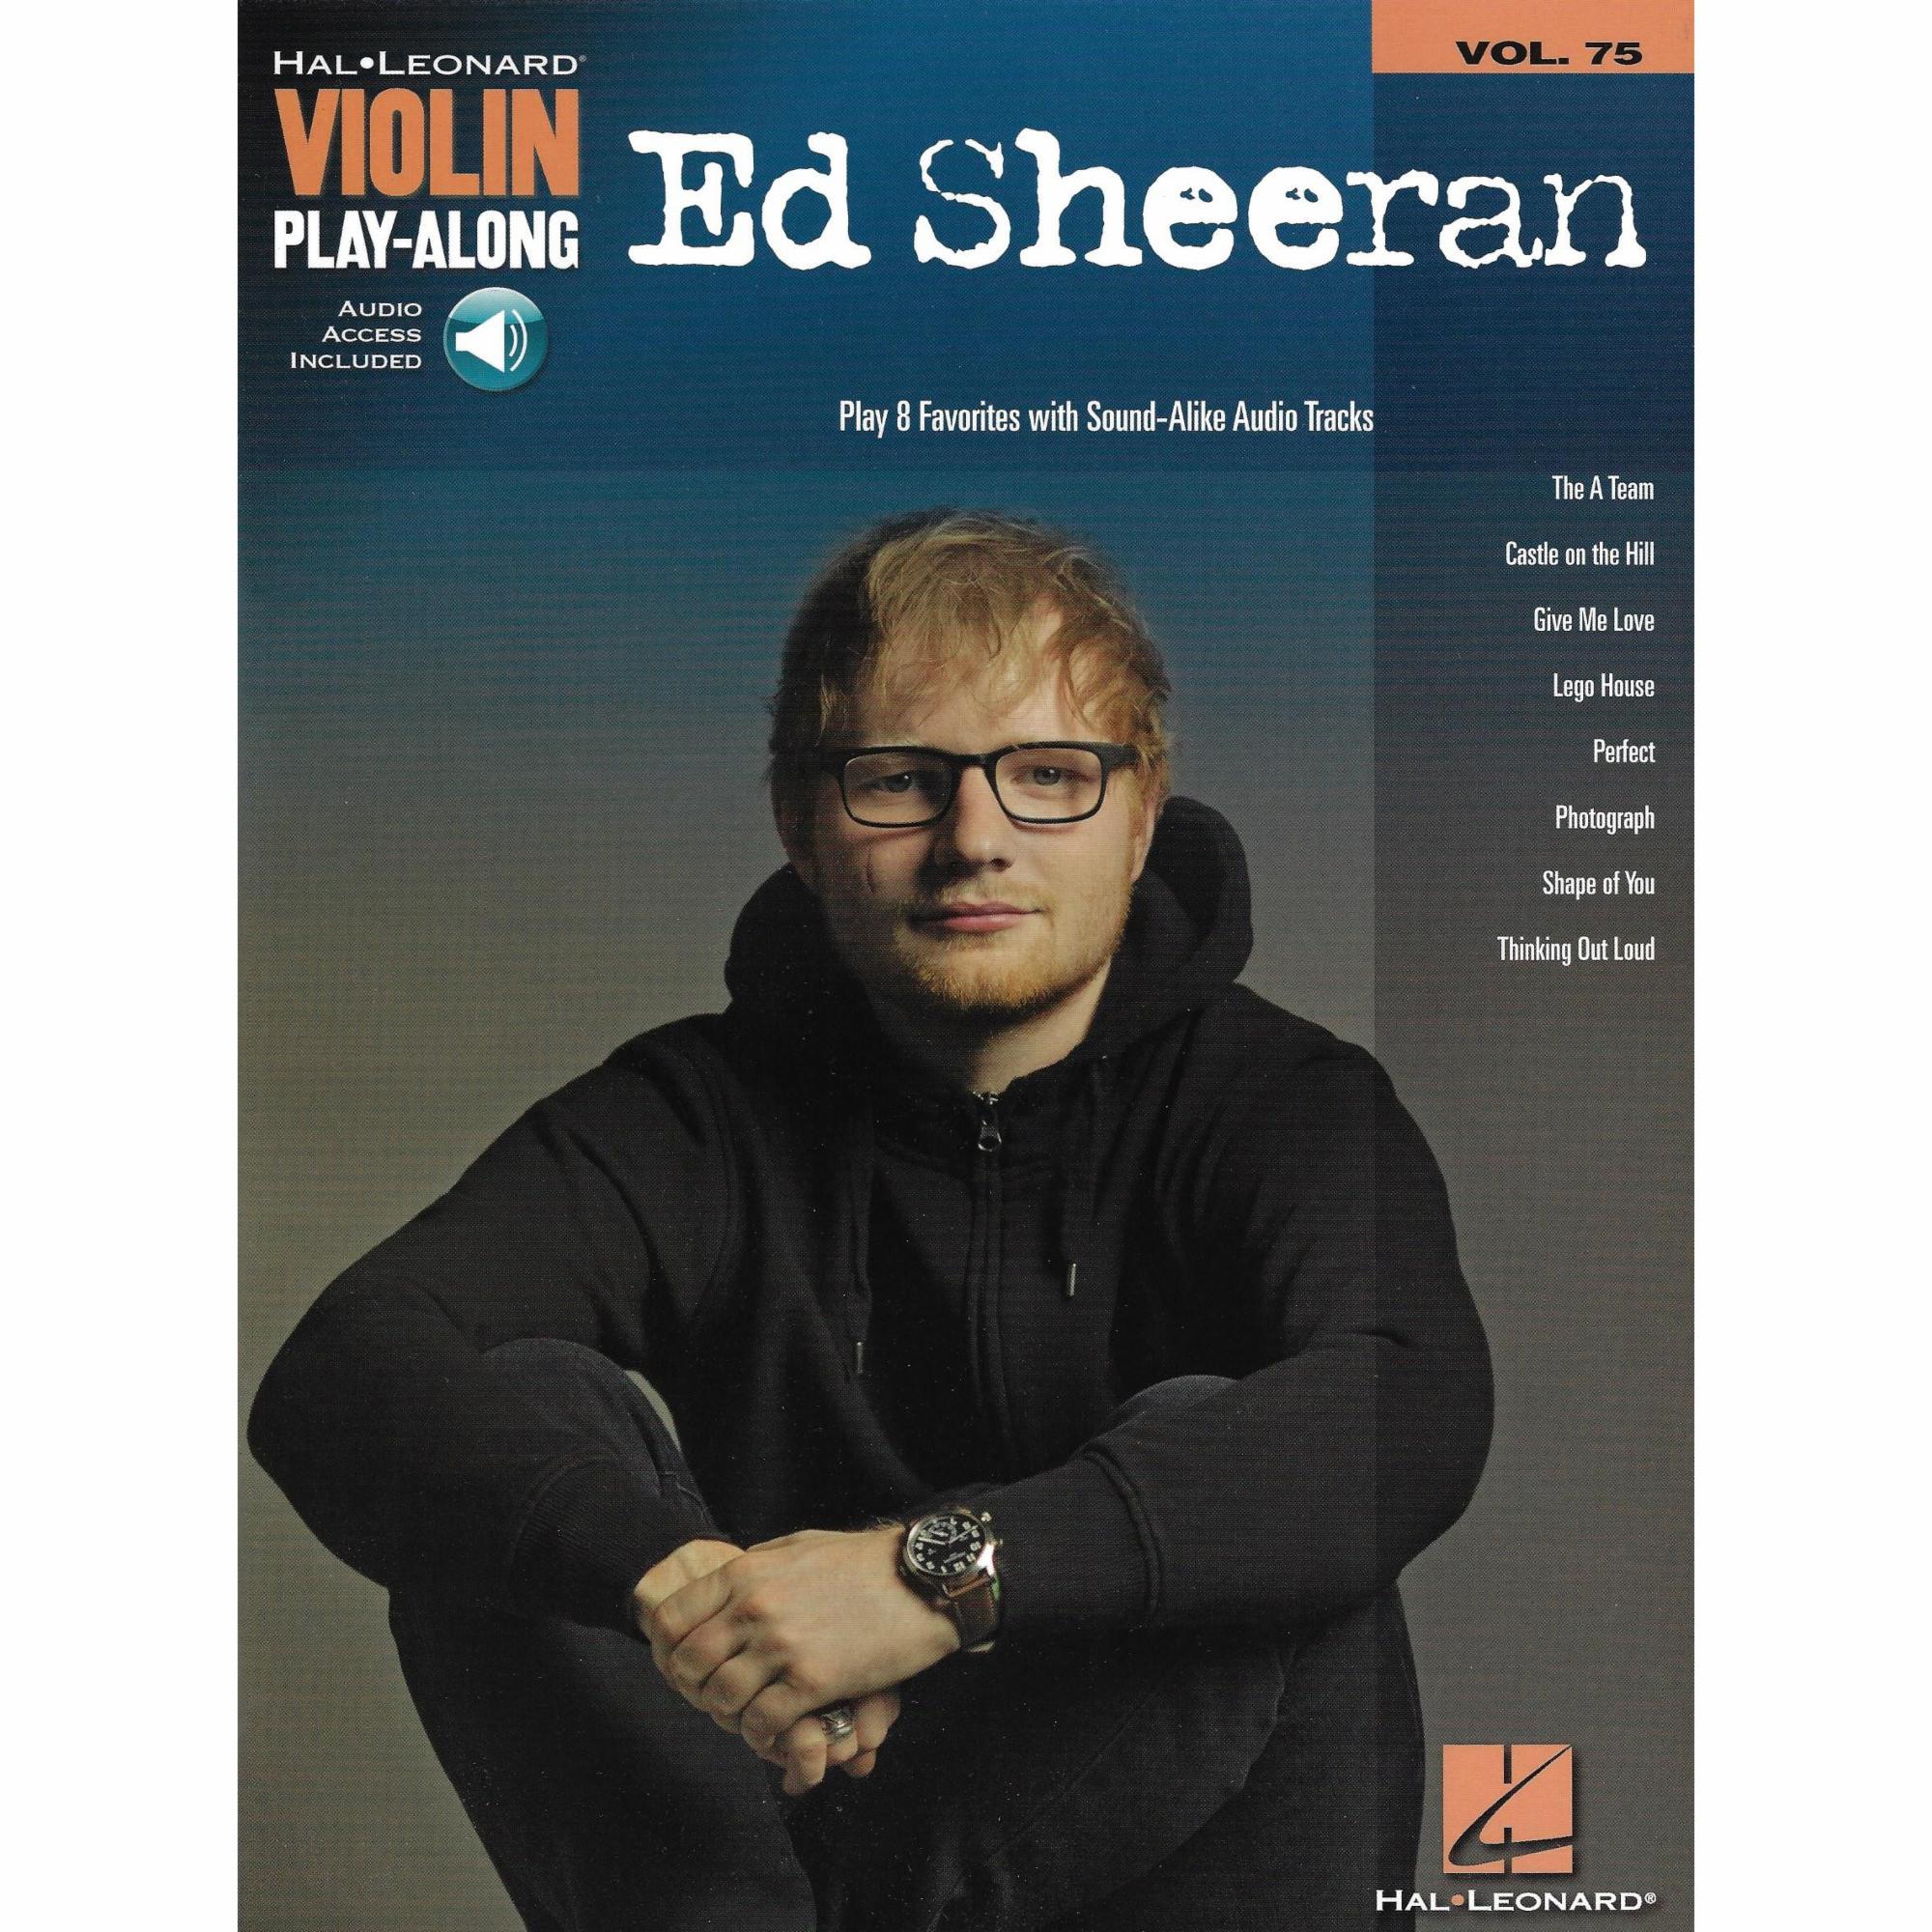 Ed Sheeran for Violin